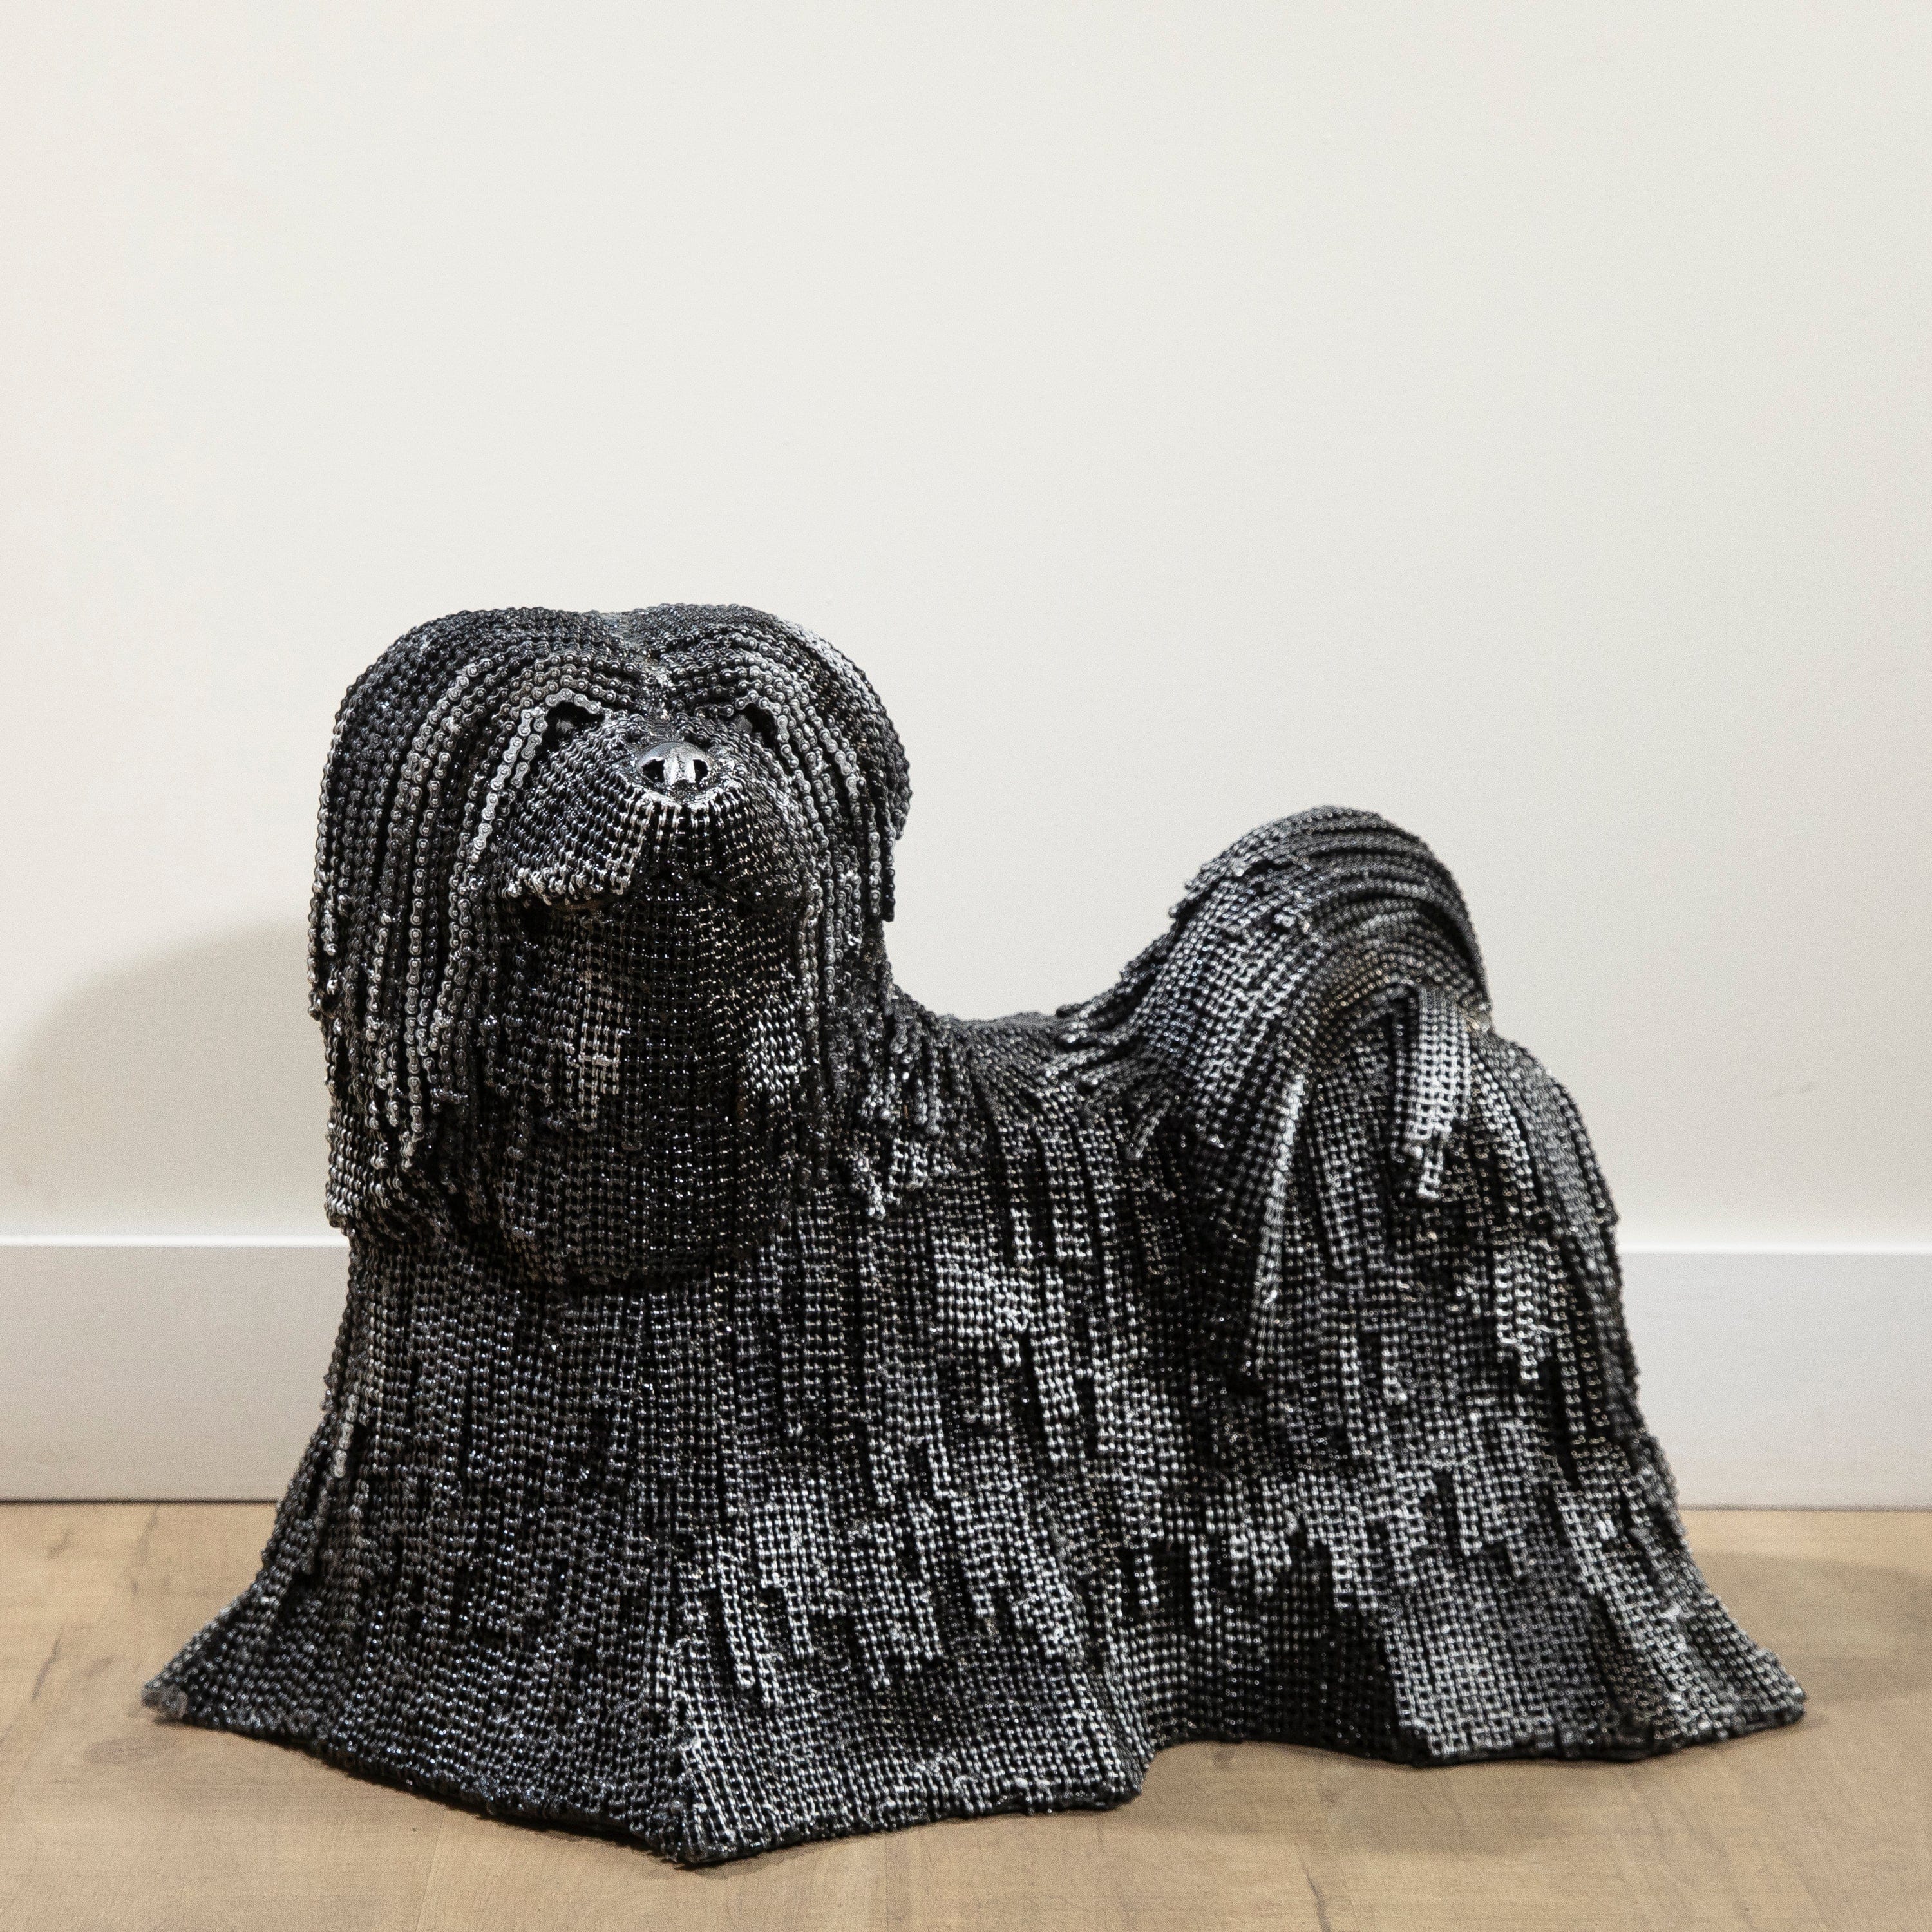 Kalifano Recycled Metal Art 16" Shih Tzu Dog Inspired Recycled Metal Art Sculpture RMS-STDOG40-P